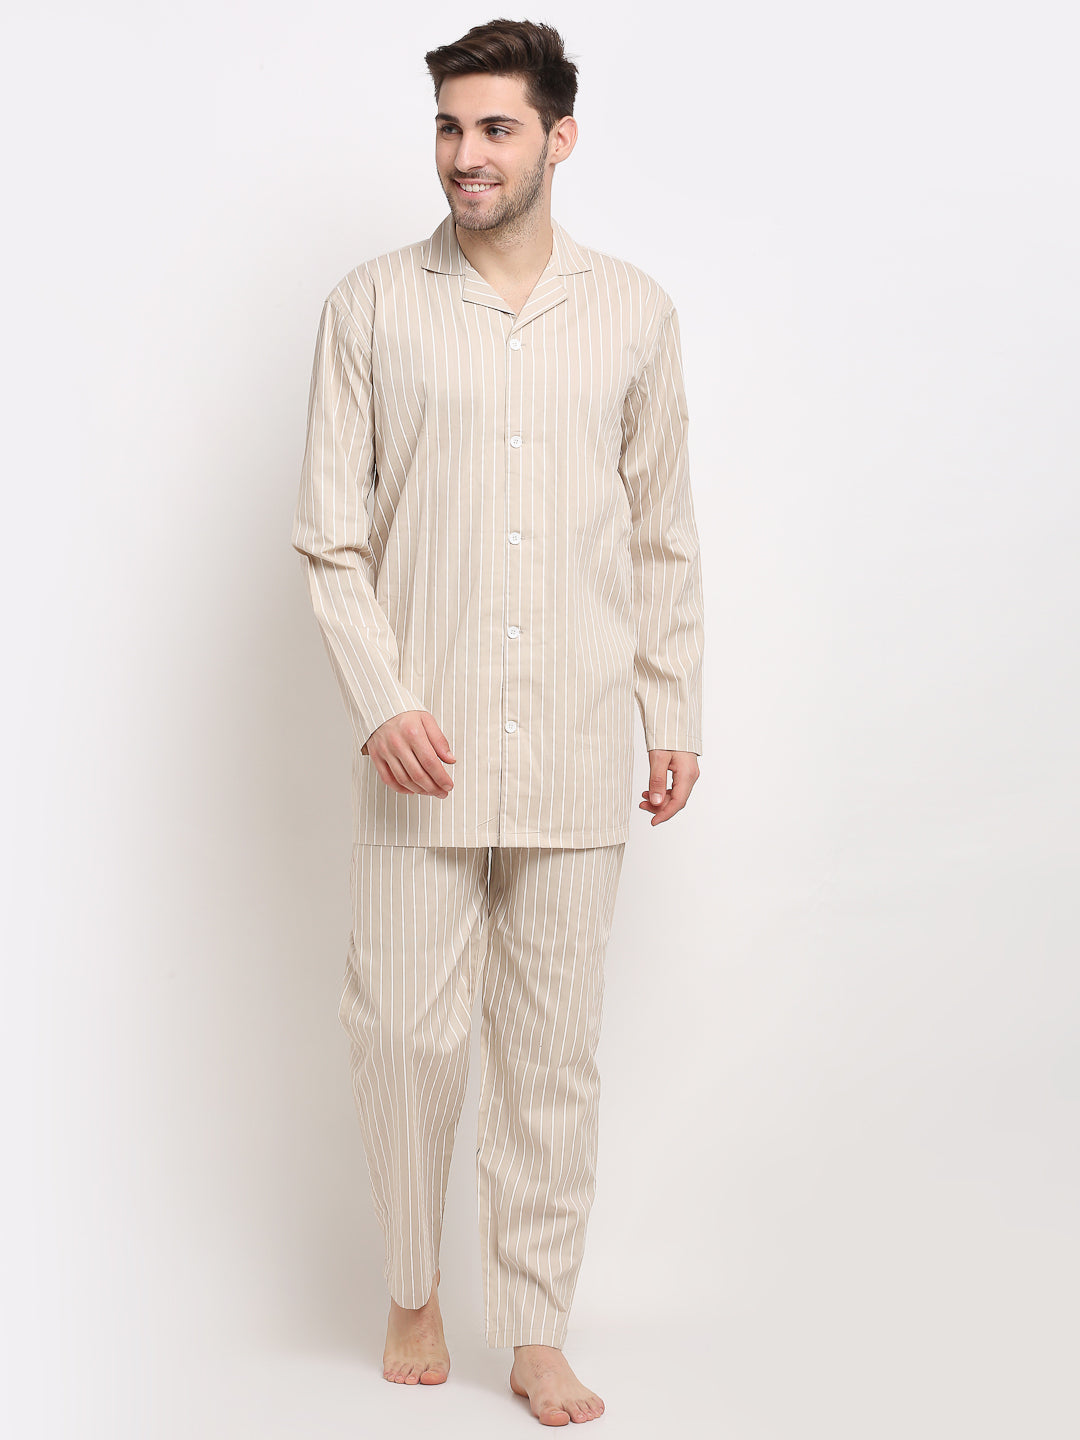 Men's Cream Cotton Striped Night Suits ( GNS 002Cream ) - Jainish